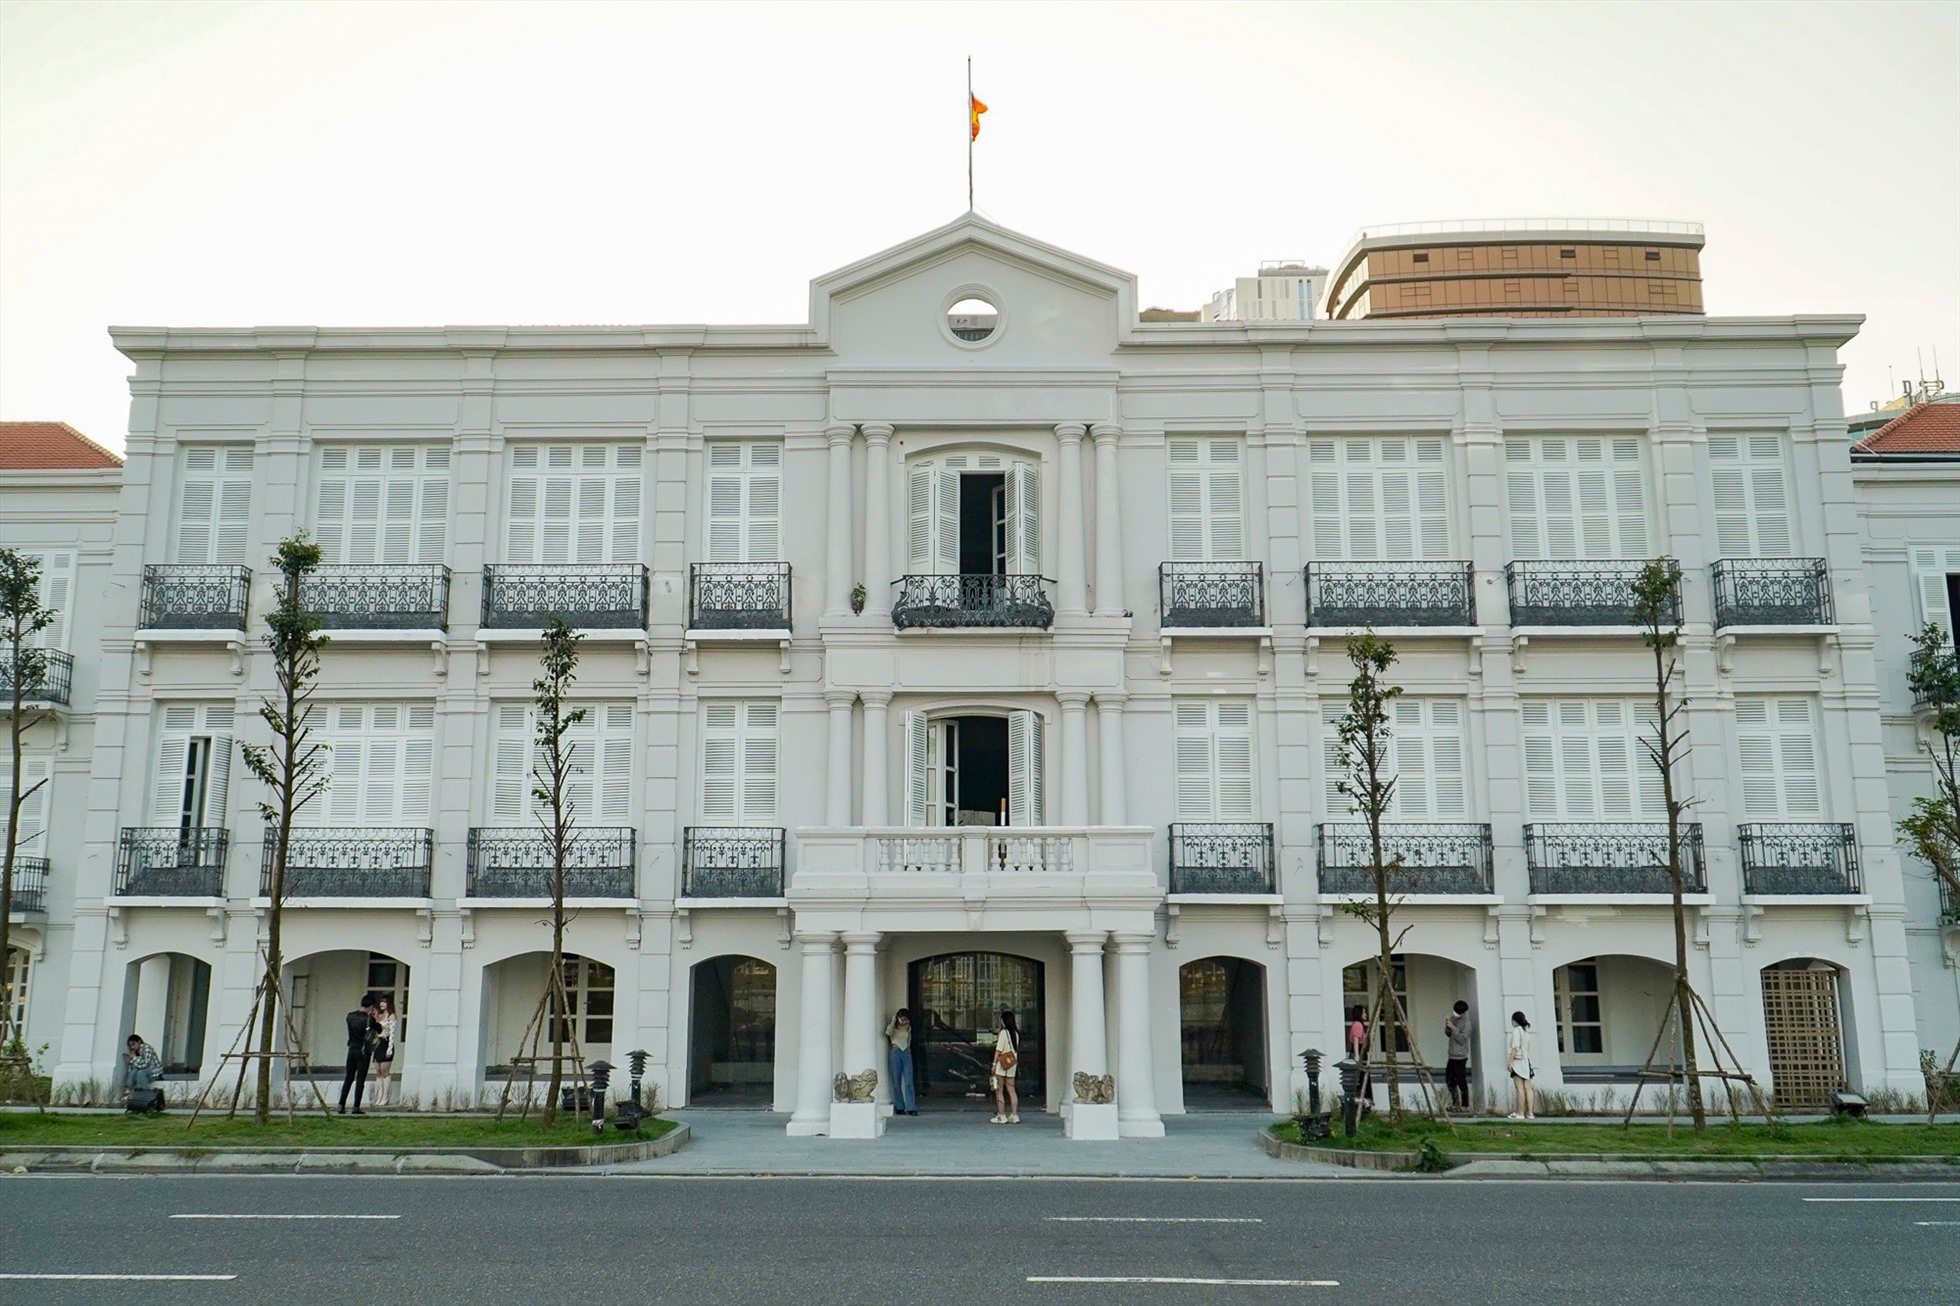 Bảo tàng Đà Nẵng mới sẽ nằm trong khuôn viên các tòa nhà số 42 – 44 Bạch Đằng và 31 Trần Phú với tổng diện tích 8.686 m2 gồm nơi trưng bày hiện vật, hệ thống hạ tầng kỹ thuật, cây xanh.